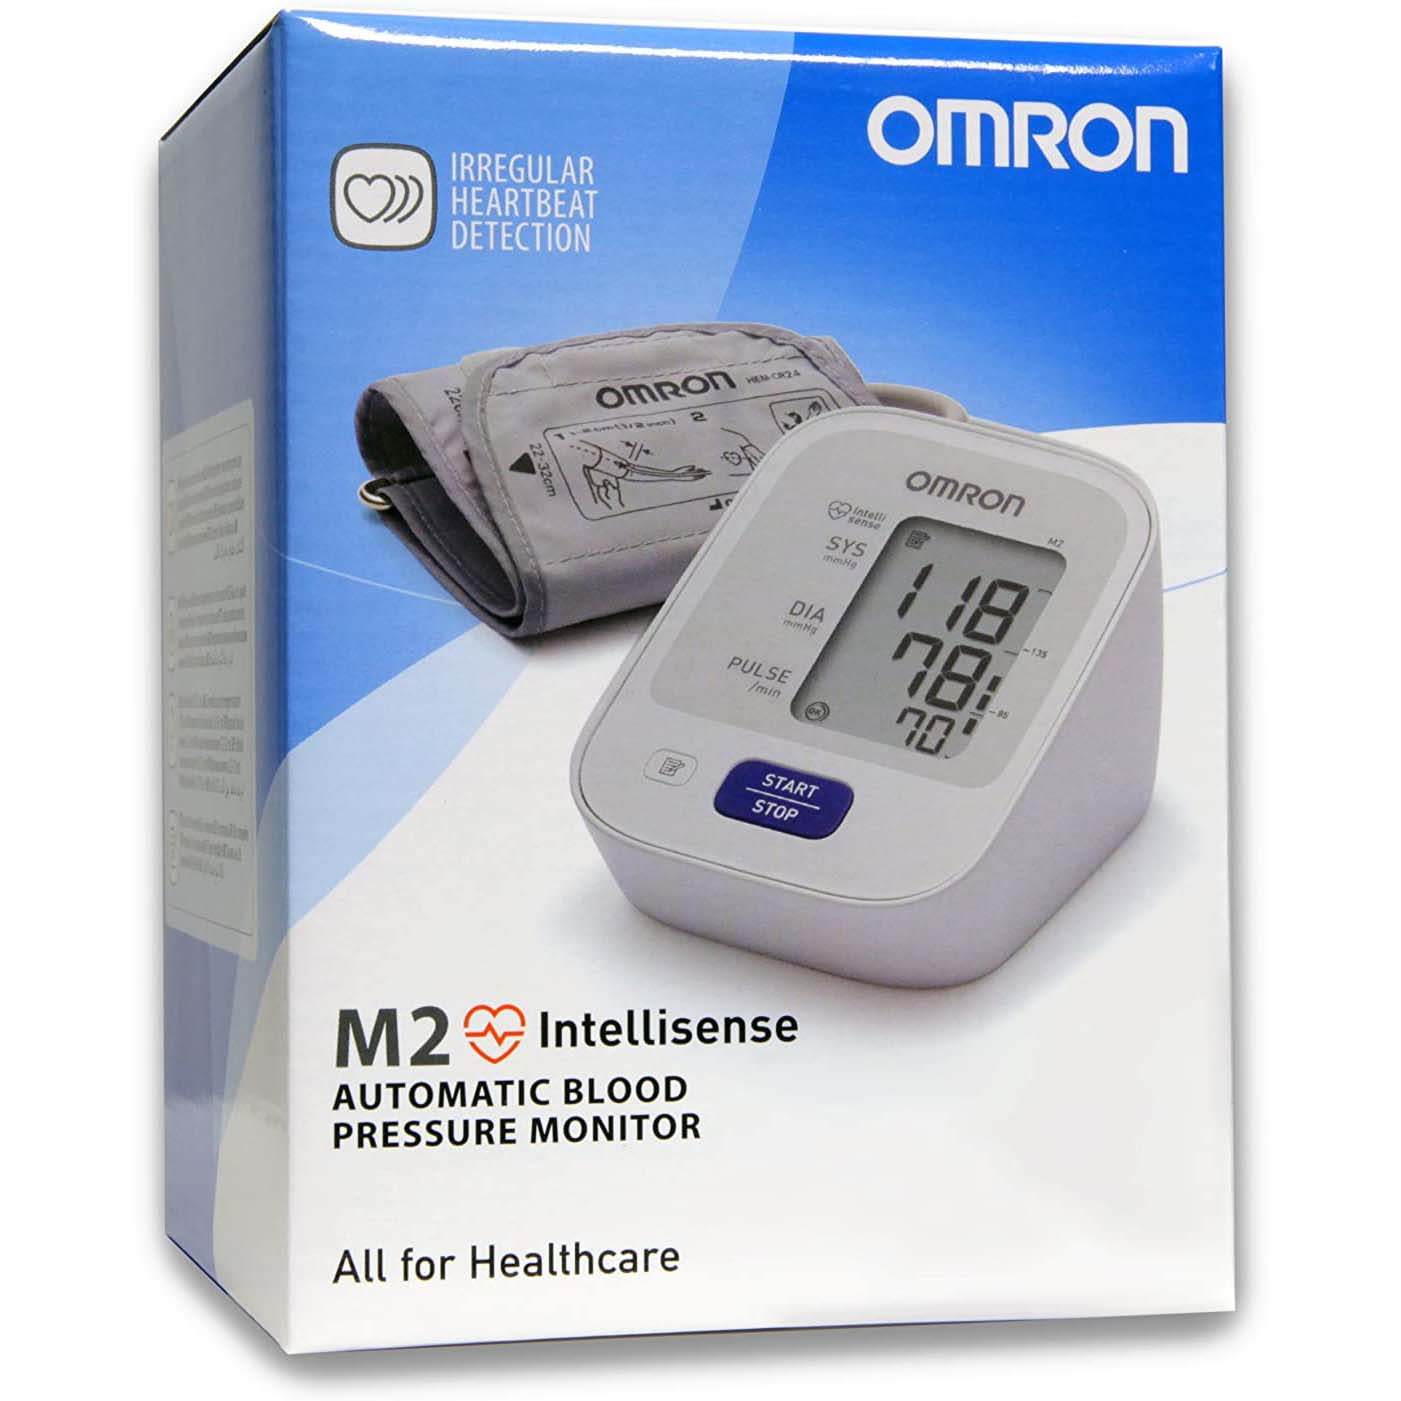 جهاز قياس ضغط الدم من اومرون M2, قطعه واحدة